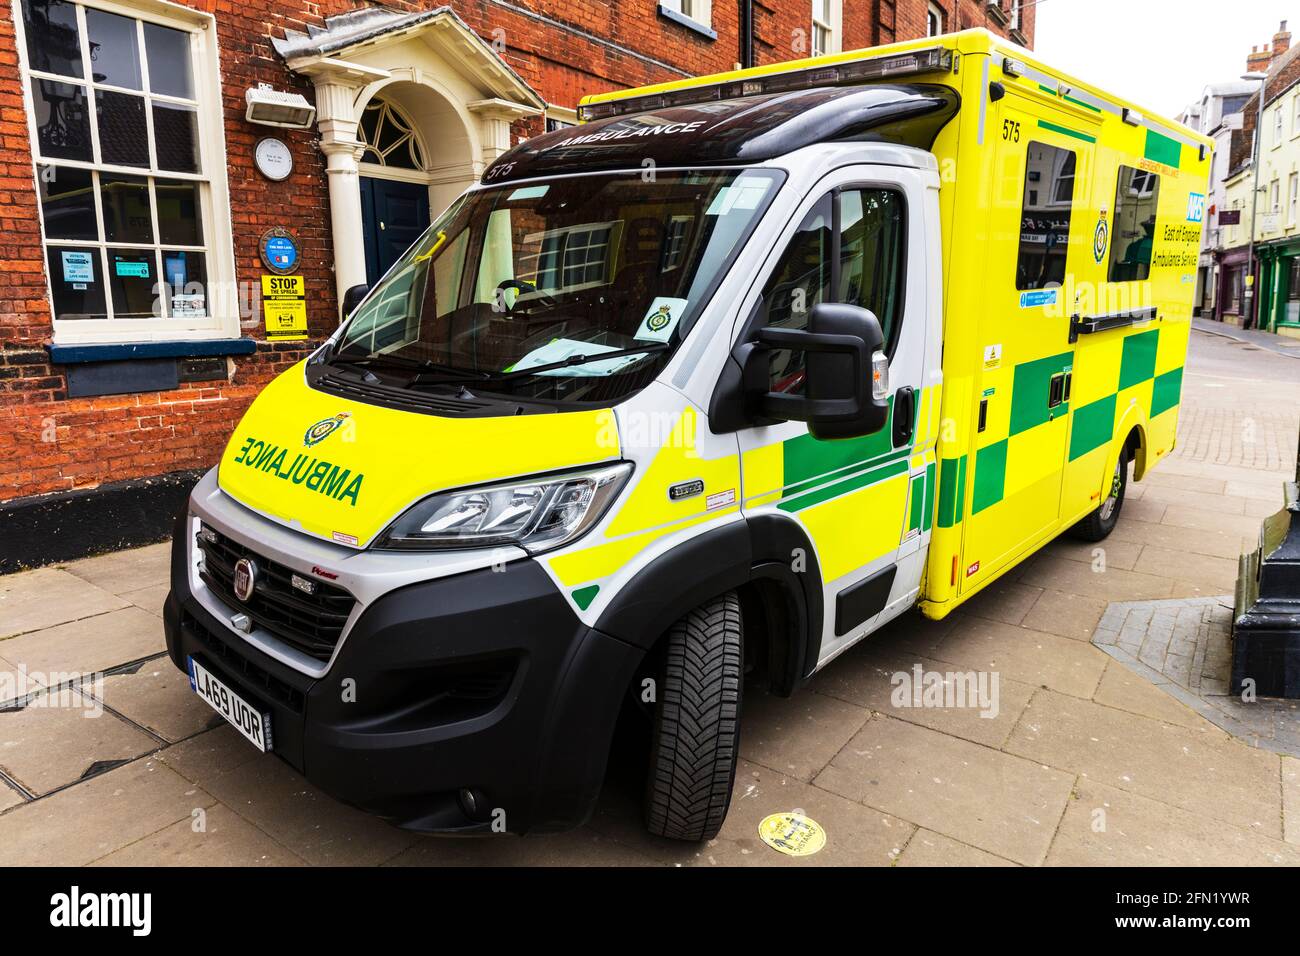 NHS ambulance, UK Ambulance, ambulance, ambulances, Norfolk, UK, England, east of England Ambulance service, NHS trust, emergency ambulance, Stock Photo